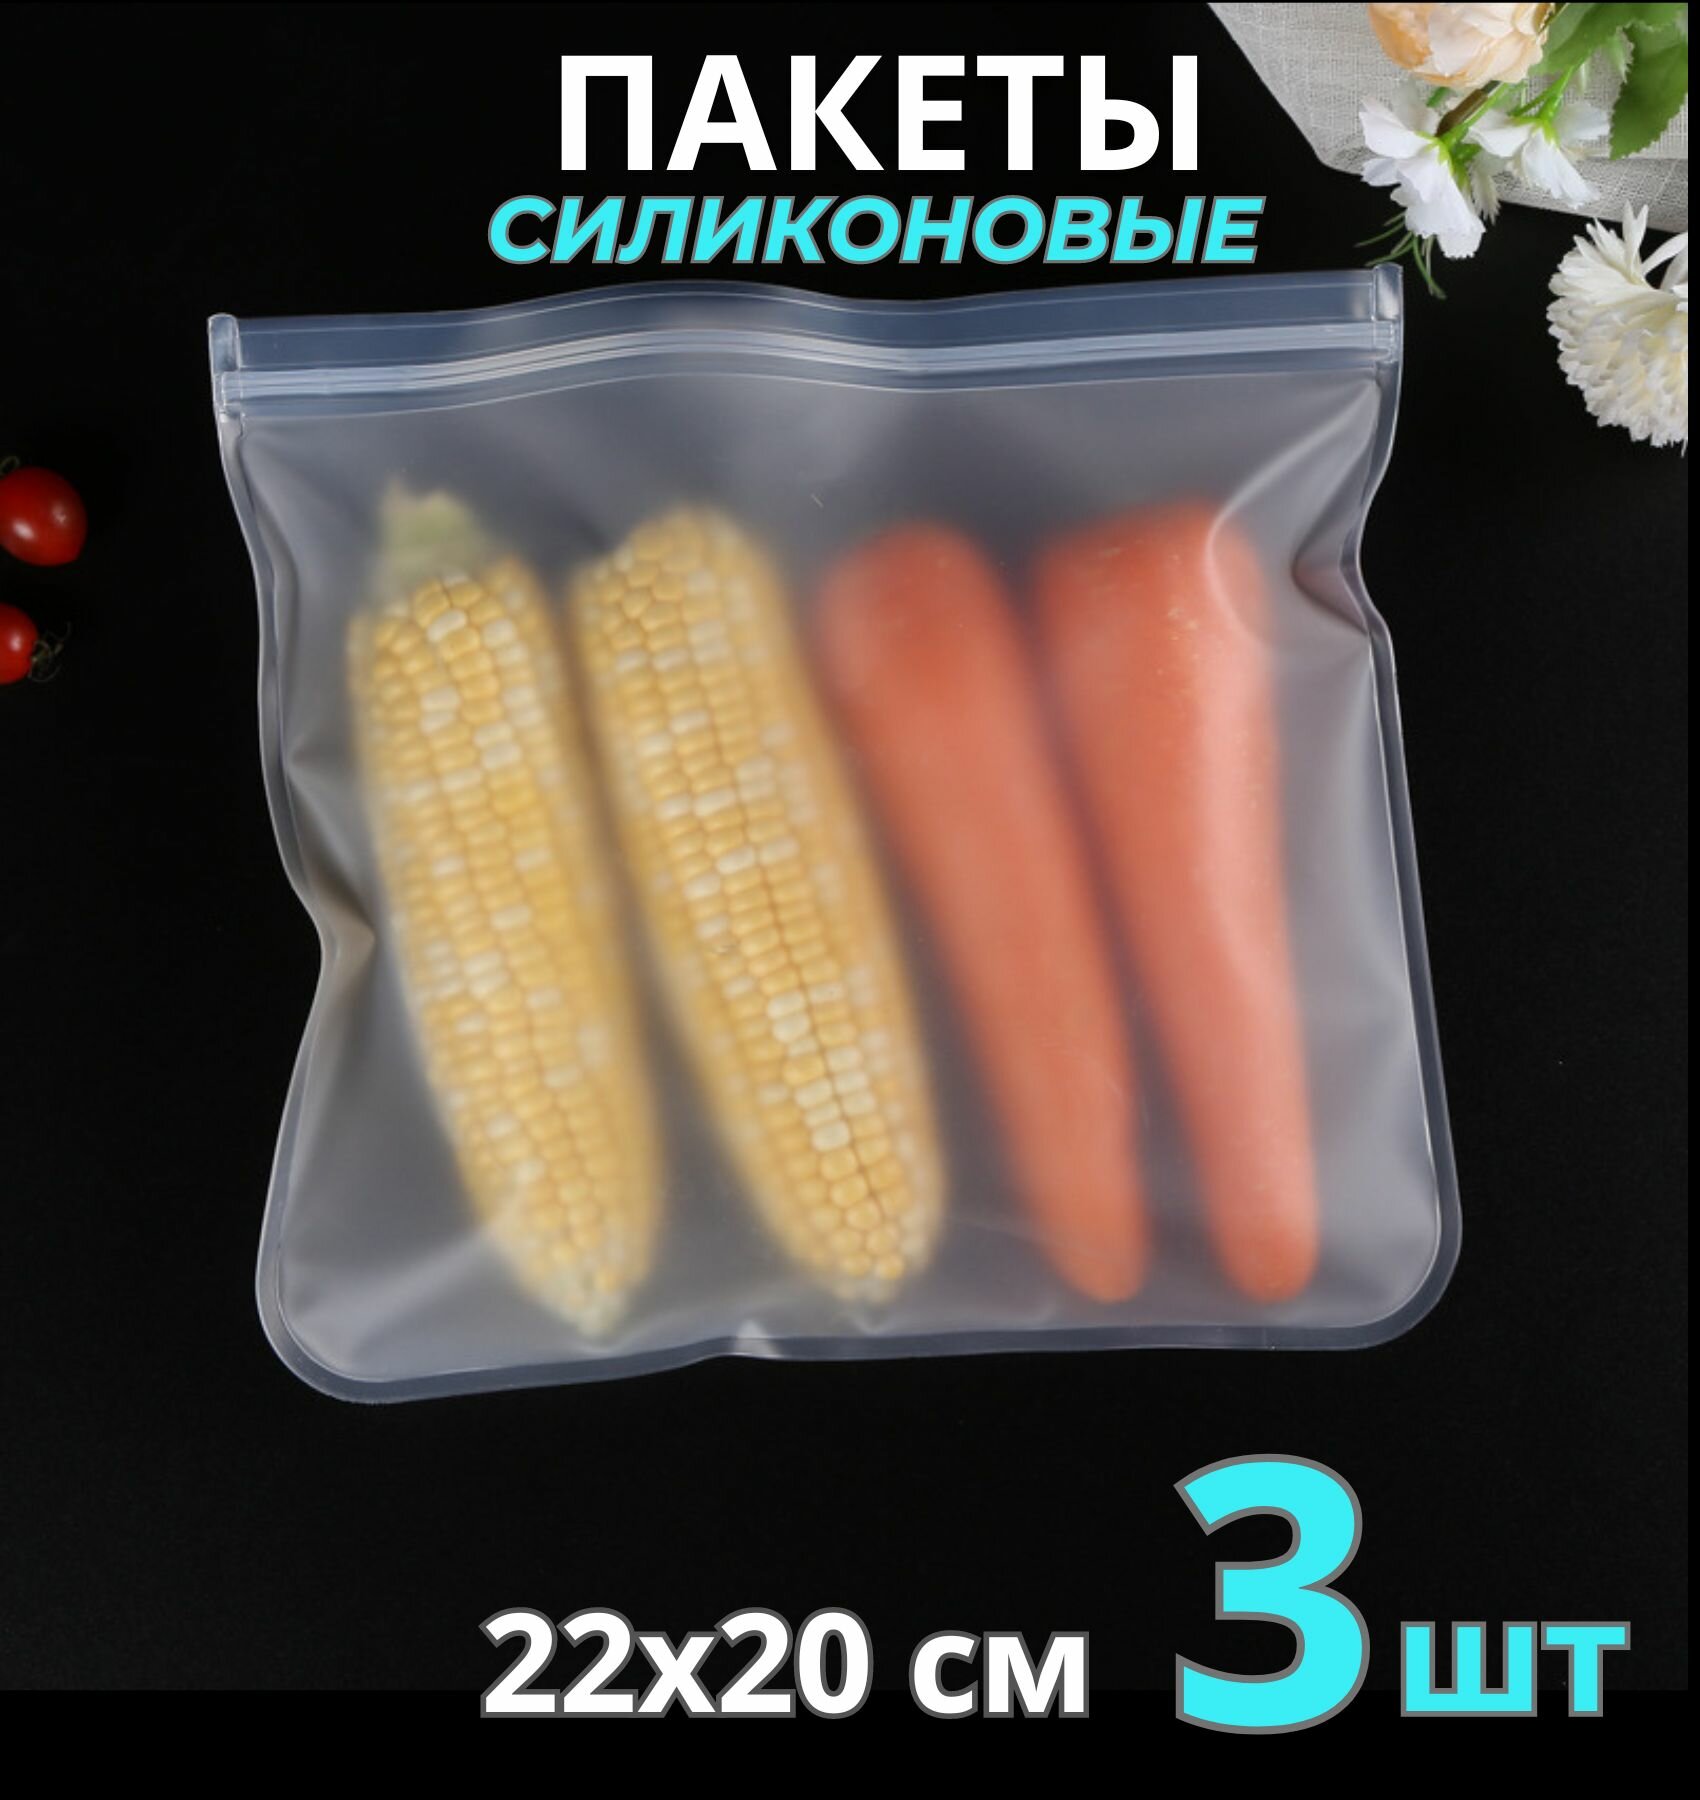 Пакет для хранения продуктов силиконовый (28х204 см) 3 шт / зип пакеты для продуктов / пакет для заморозки / пакеты пищевые / zip lock